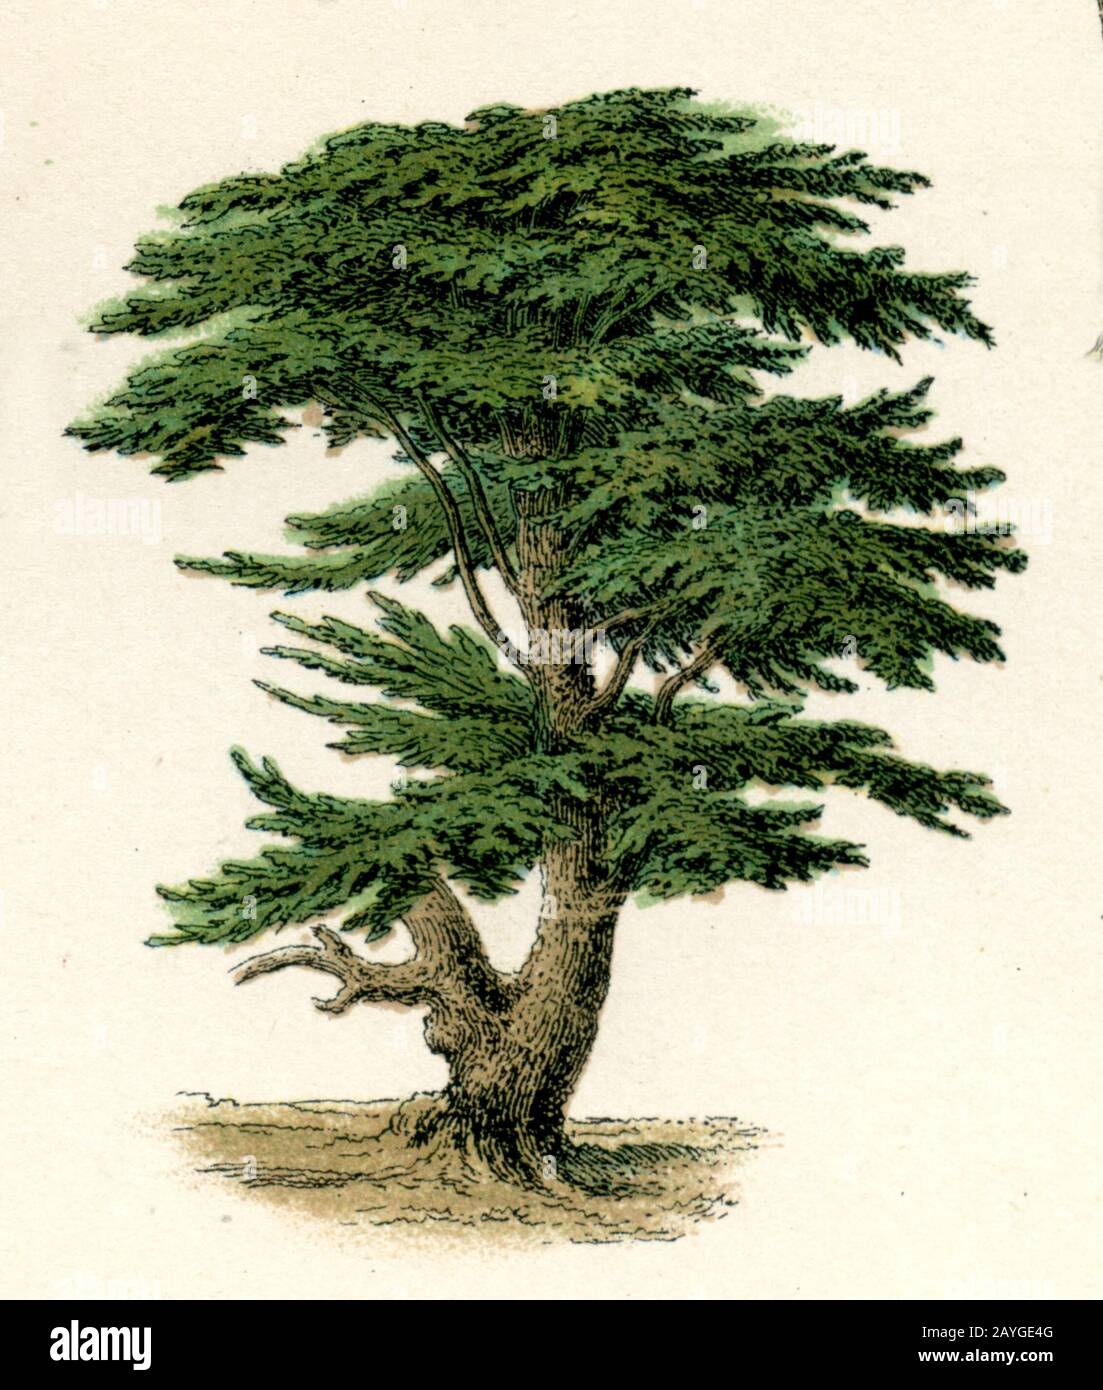 Cèdre du Liban, Cedrus libani Syn. Cedrus libanotica, Libanon-Zeder, Cèdre du Liban, (livre botanique, 1886) Banque D'Images